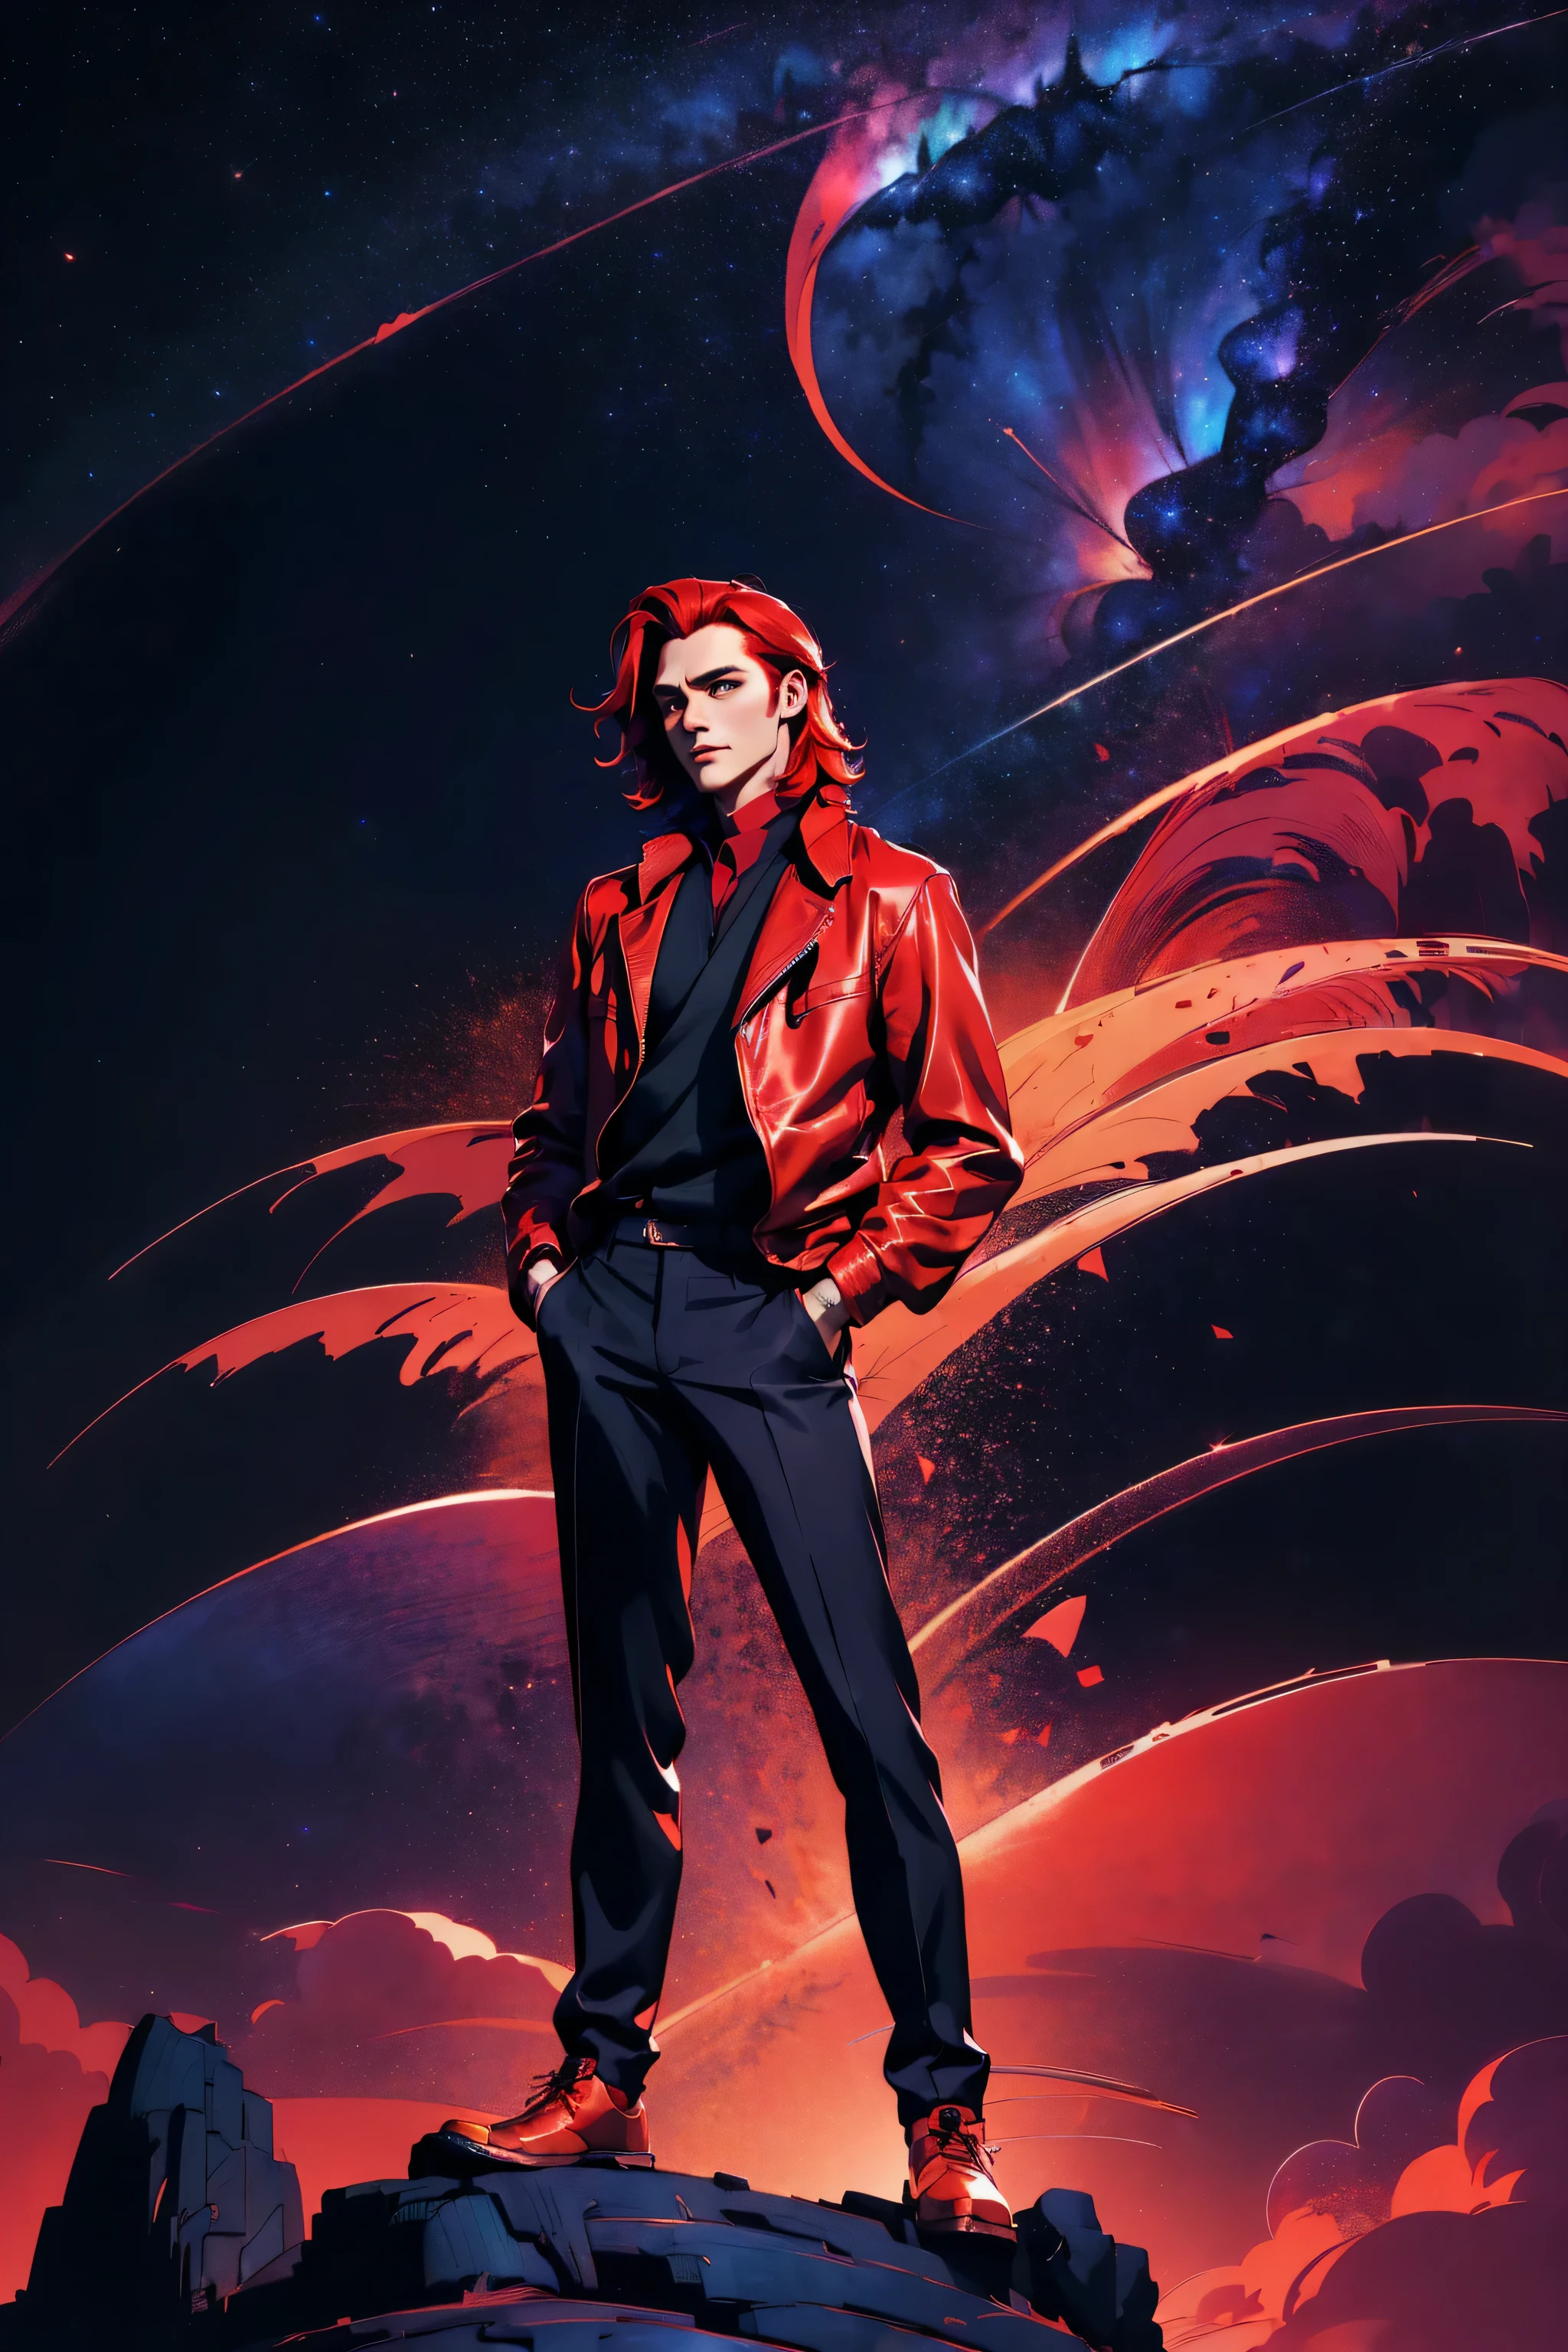 l1s4fr4nk, un hombre, elegante, robusto, cabello rojo, usando una chaqueta, colocado en una carretera de la ciudad por la noche, iluminación urbana suave, Cielo estrellado en el fondo, en una pose natural, mejor calidad, loraeyes